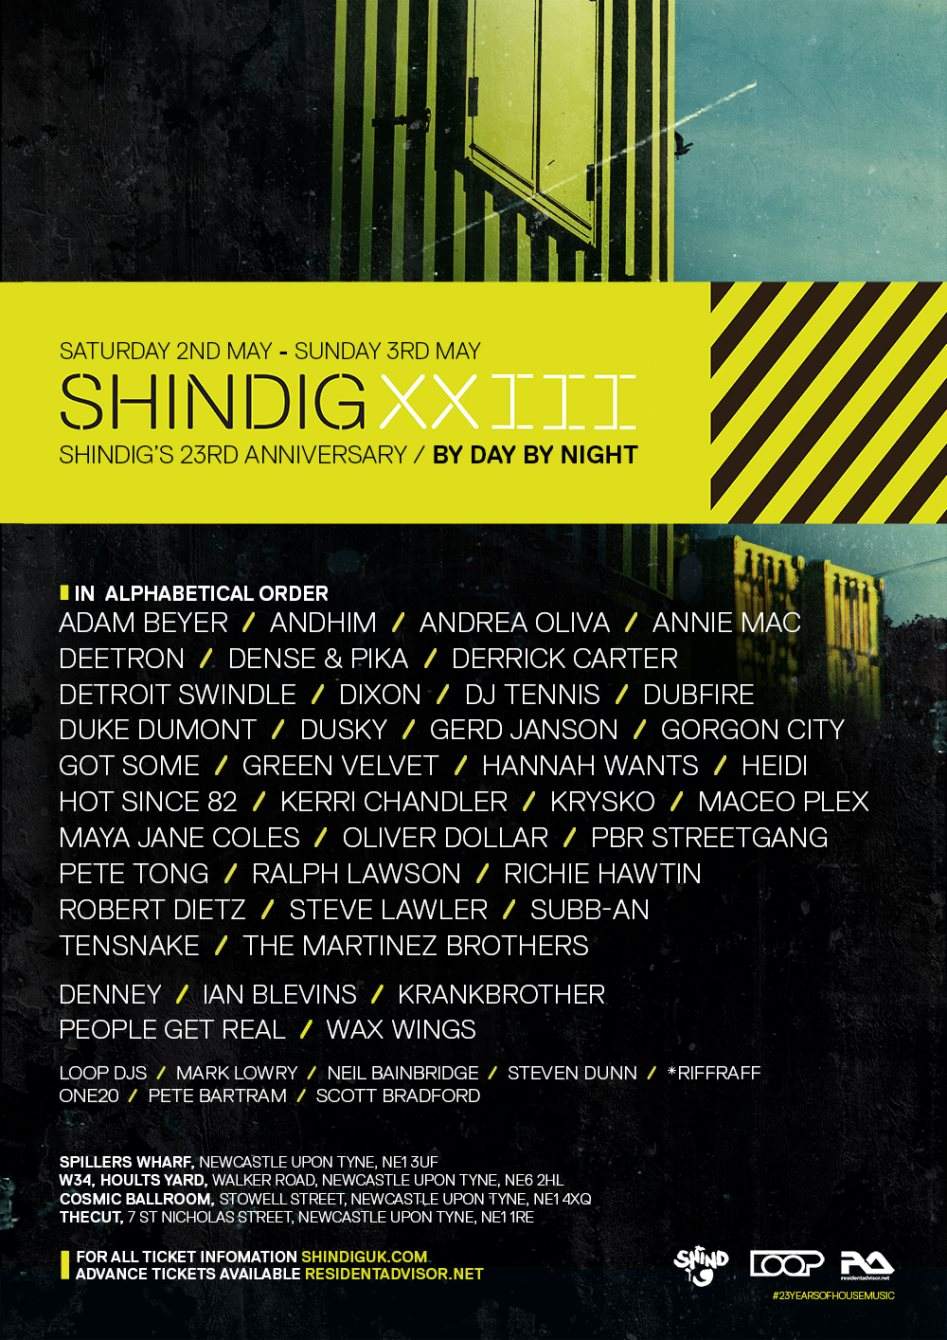 Shindig/XXIII Shindig Festival - 23rd Anniversary Byday/Bynight - Página frontal